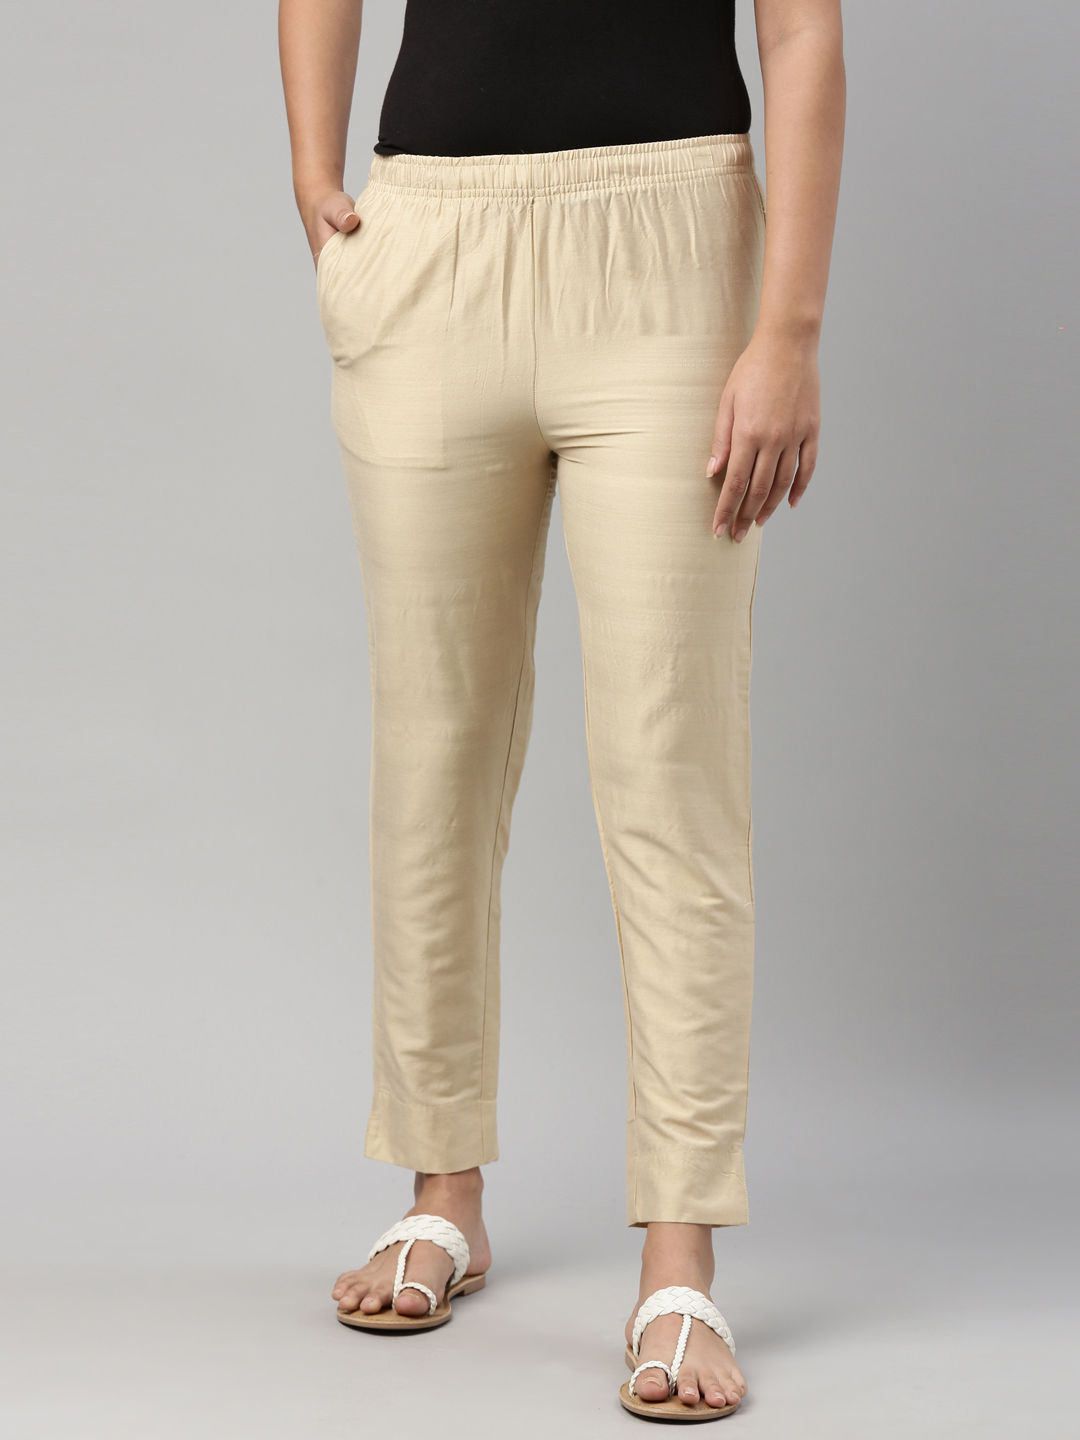 Shop Womens Solid Cherry Comfort Fit Cotton Pants Online  Go Colors